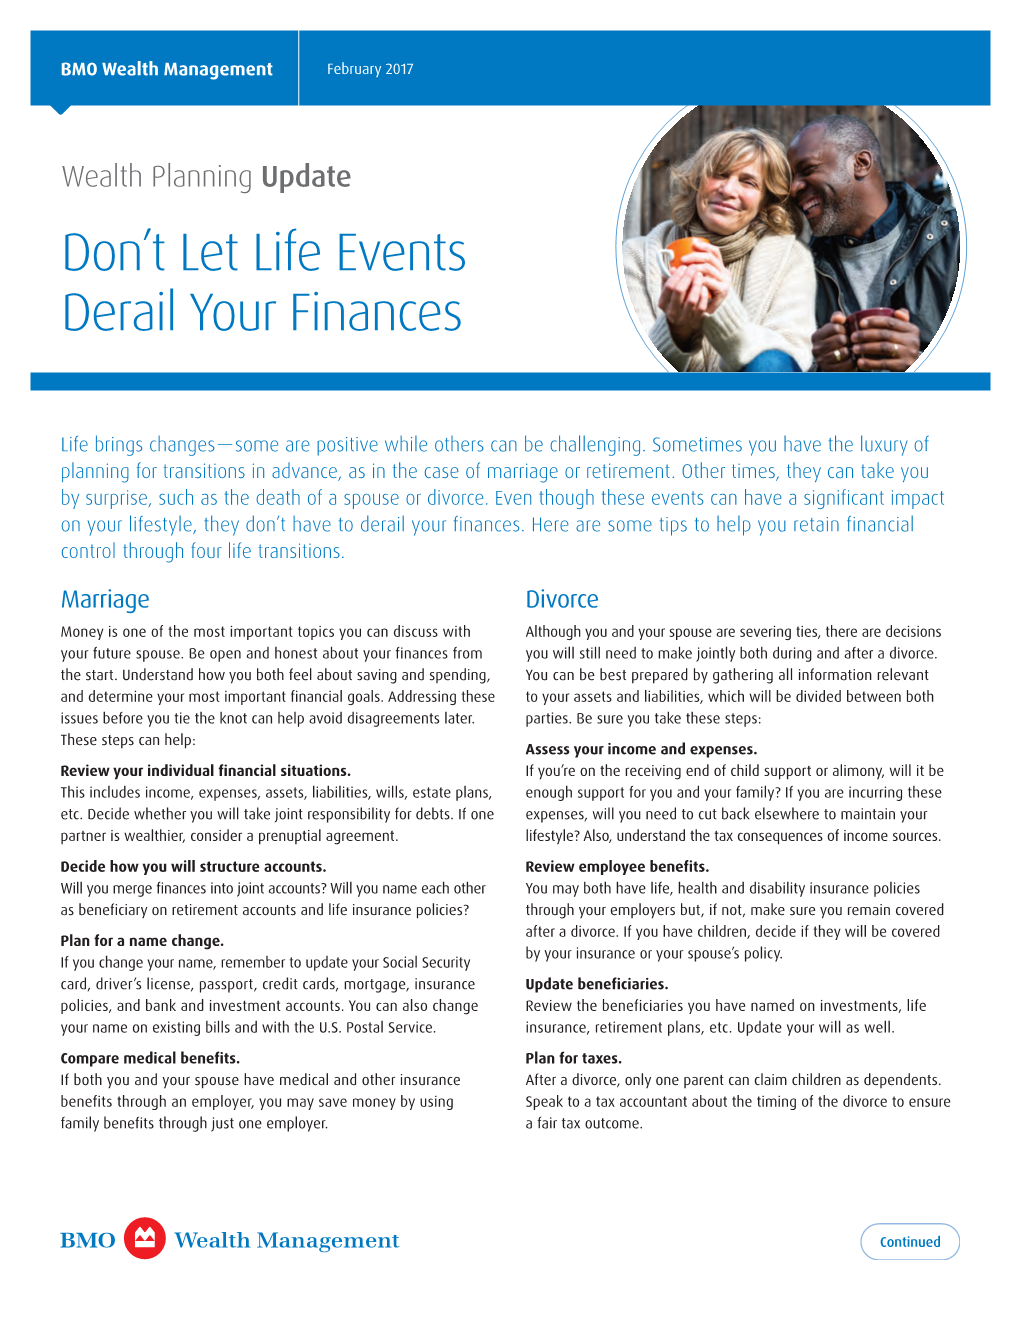 Don't Let Life Events Derail Your Finances